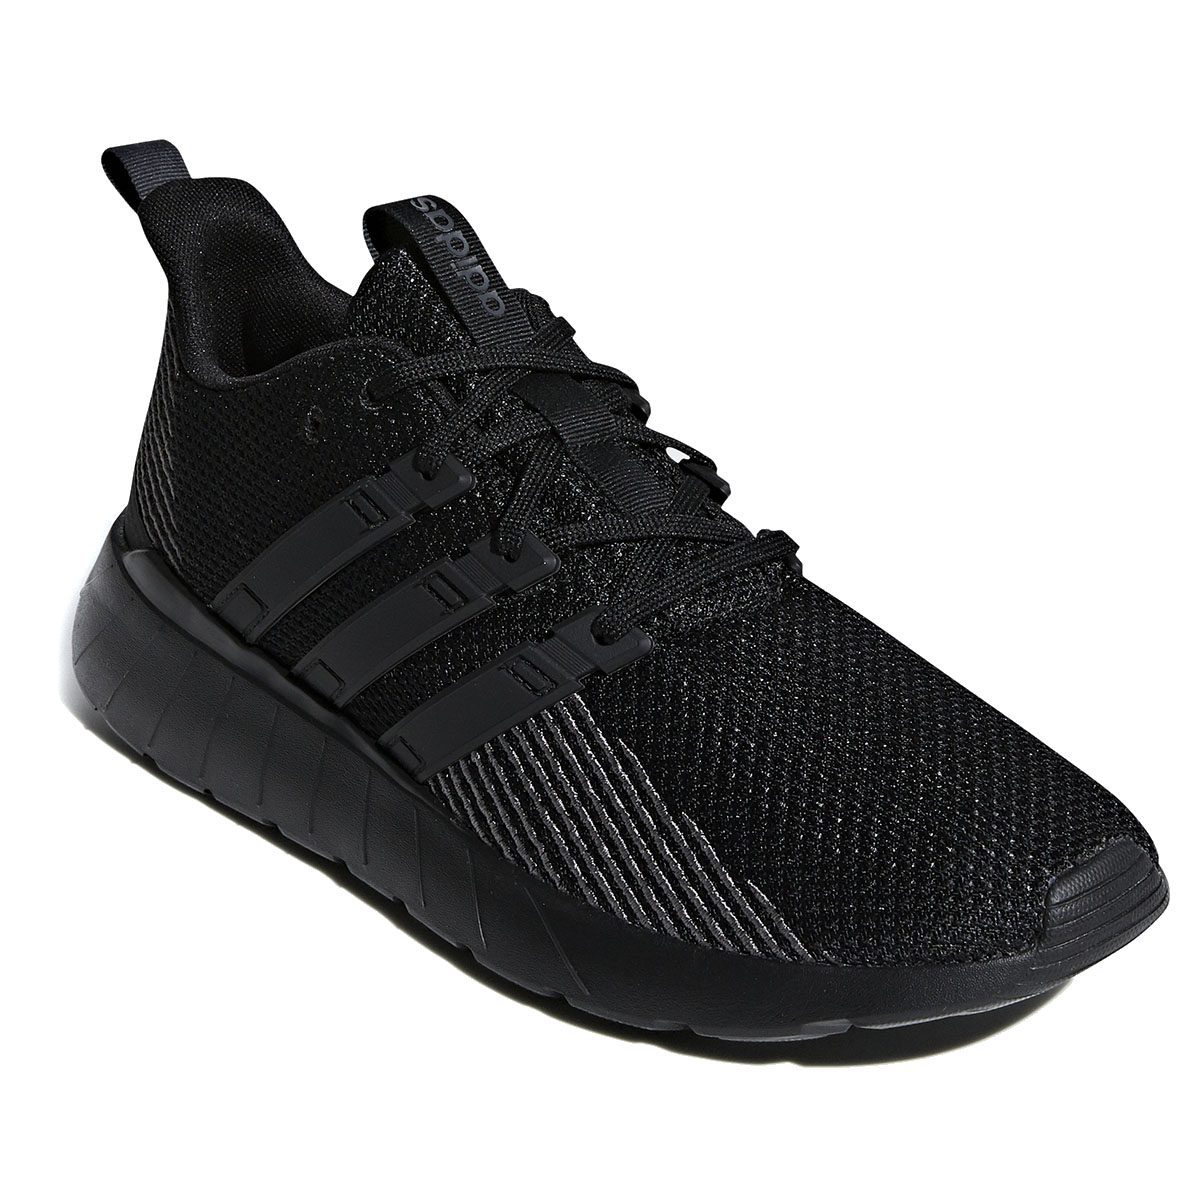 Adidas Men's Questar Flow Core Black/Grey Six Shoes F36255 - WOOKI.COM